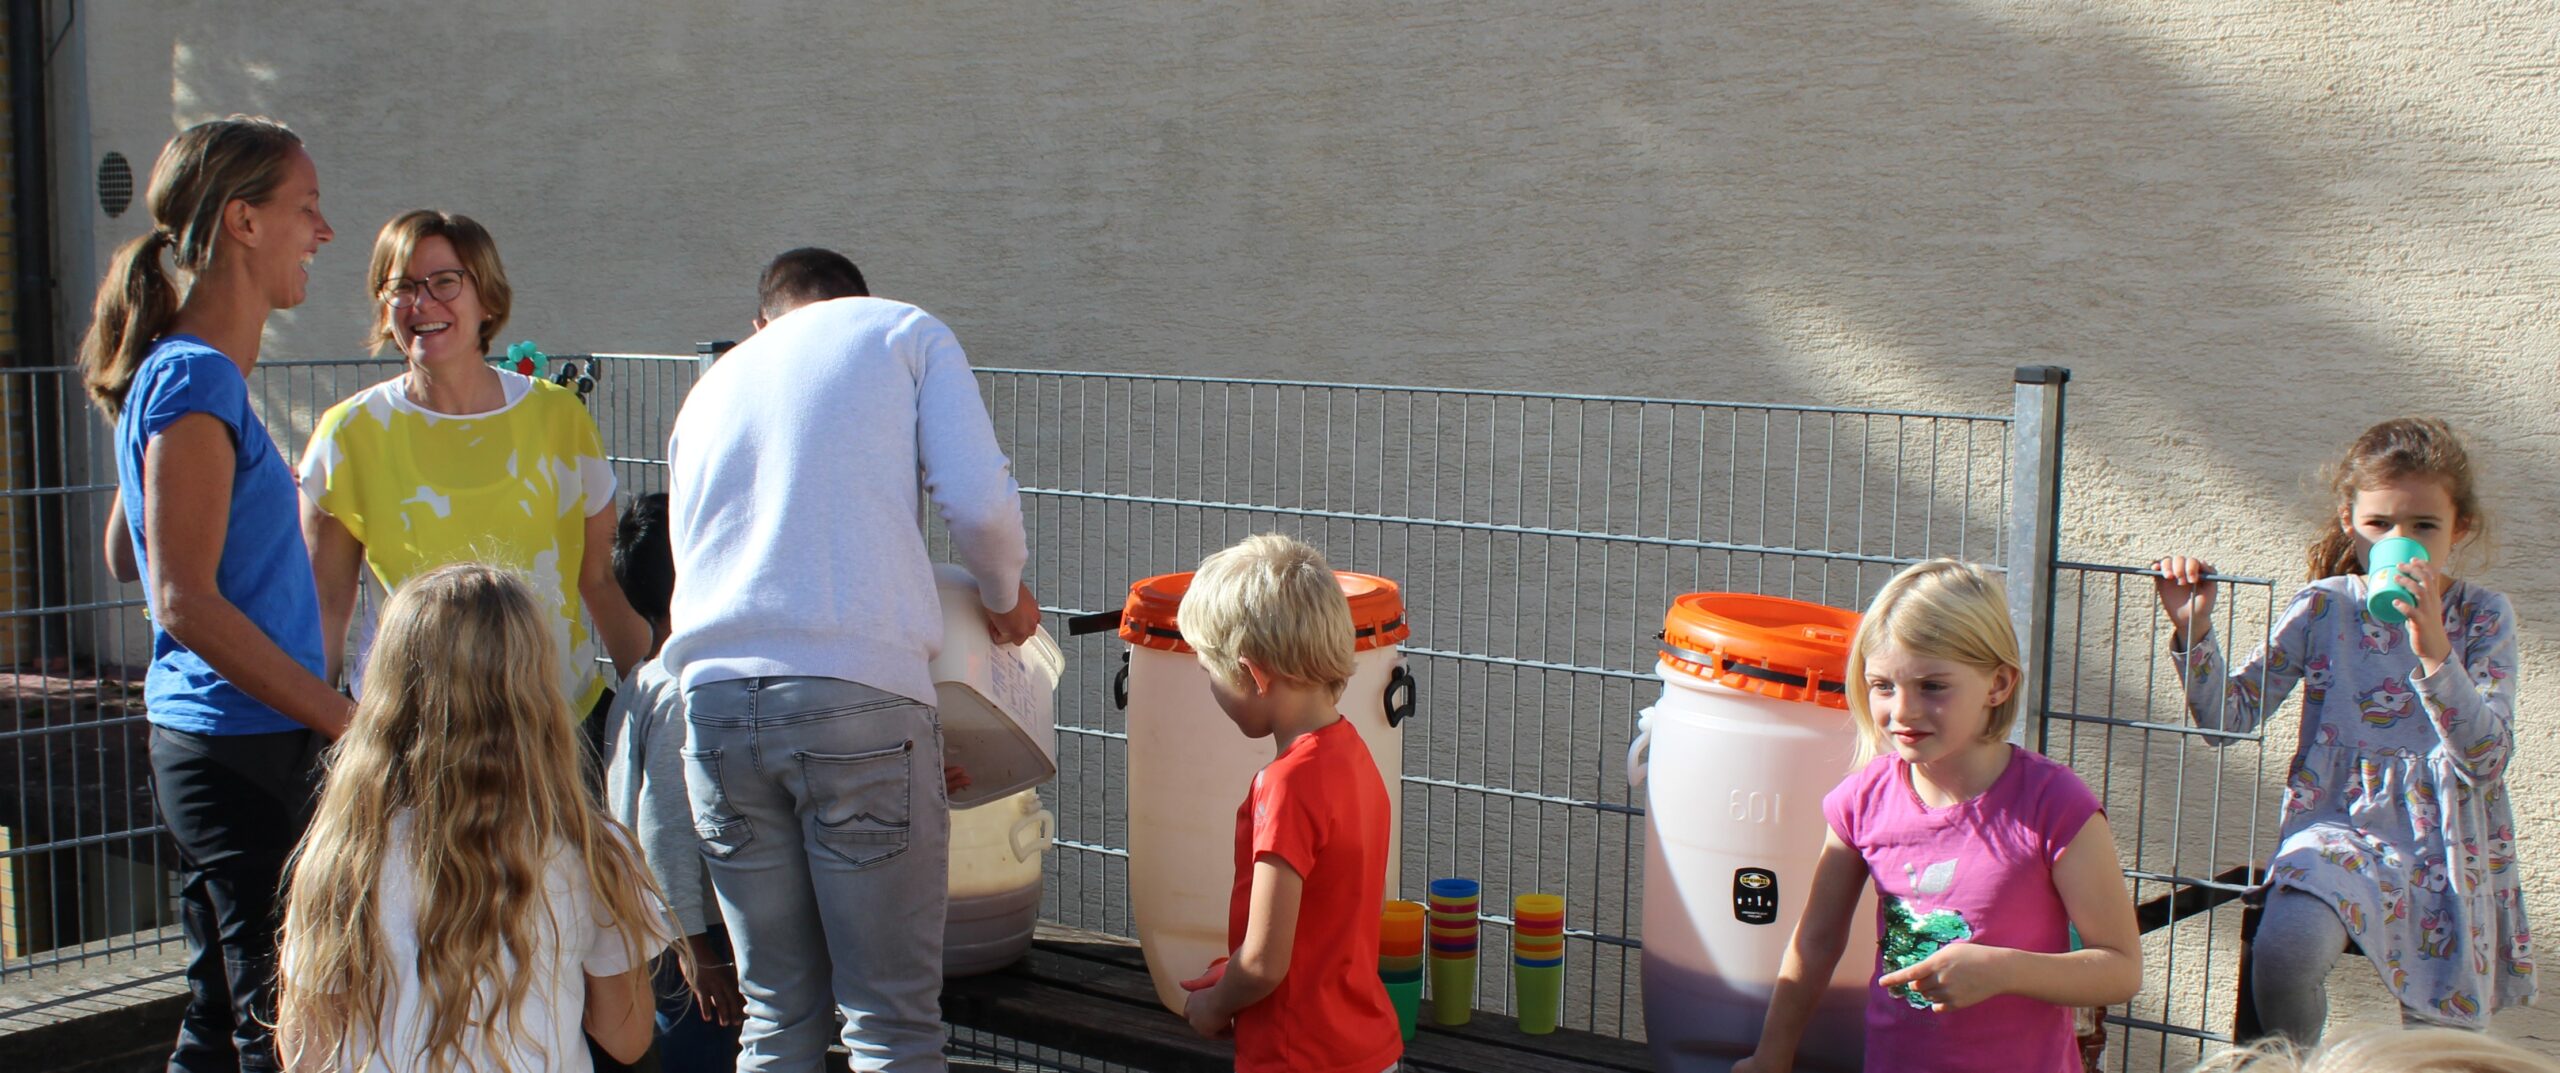 Aus Plastikbehältern wird der frisch gepresste Apfelsaft gezapft und die Kinder dürfen direkt davon trinken.